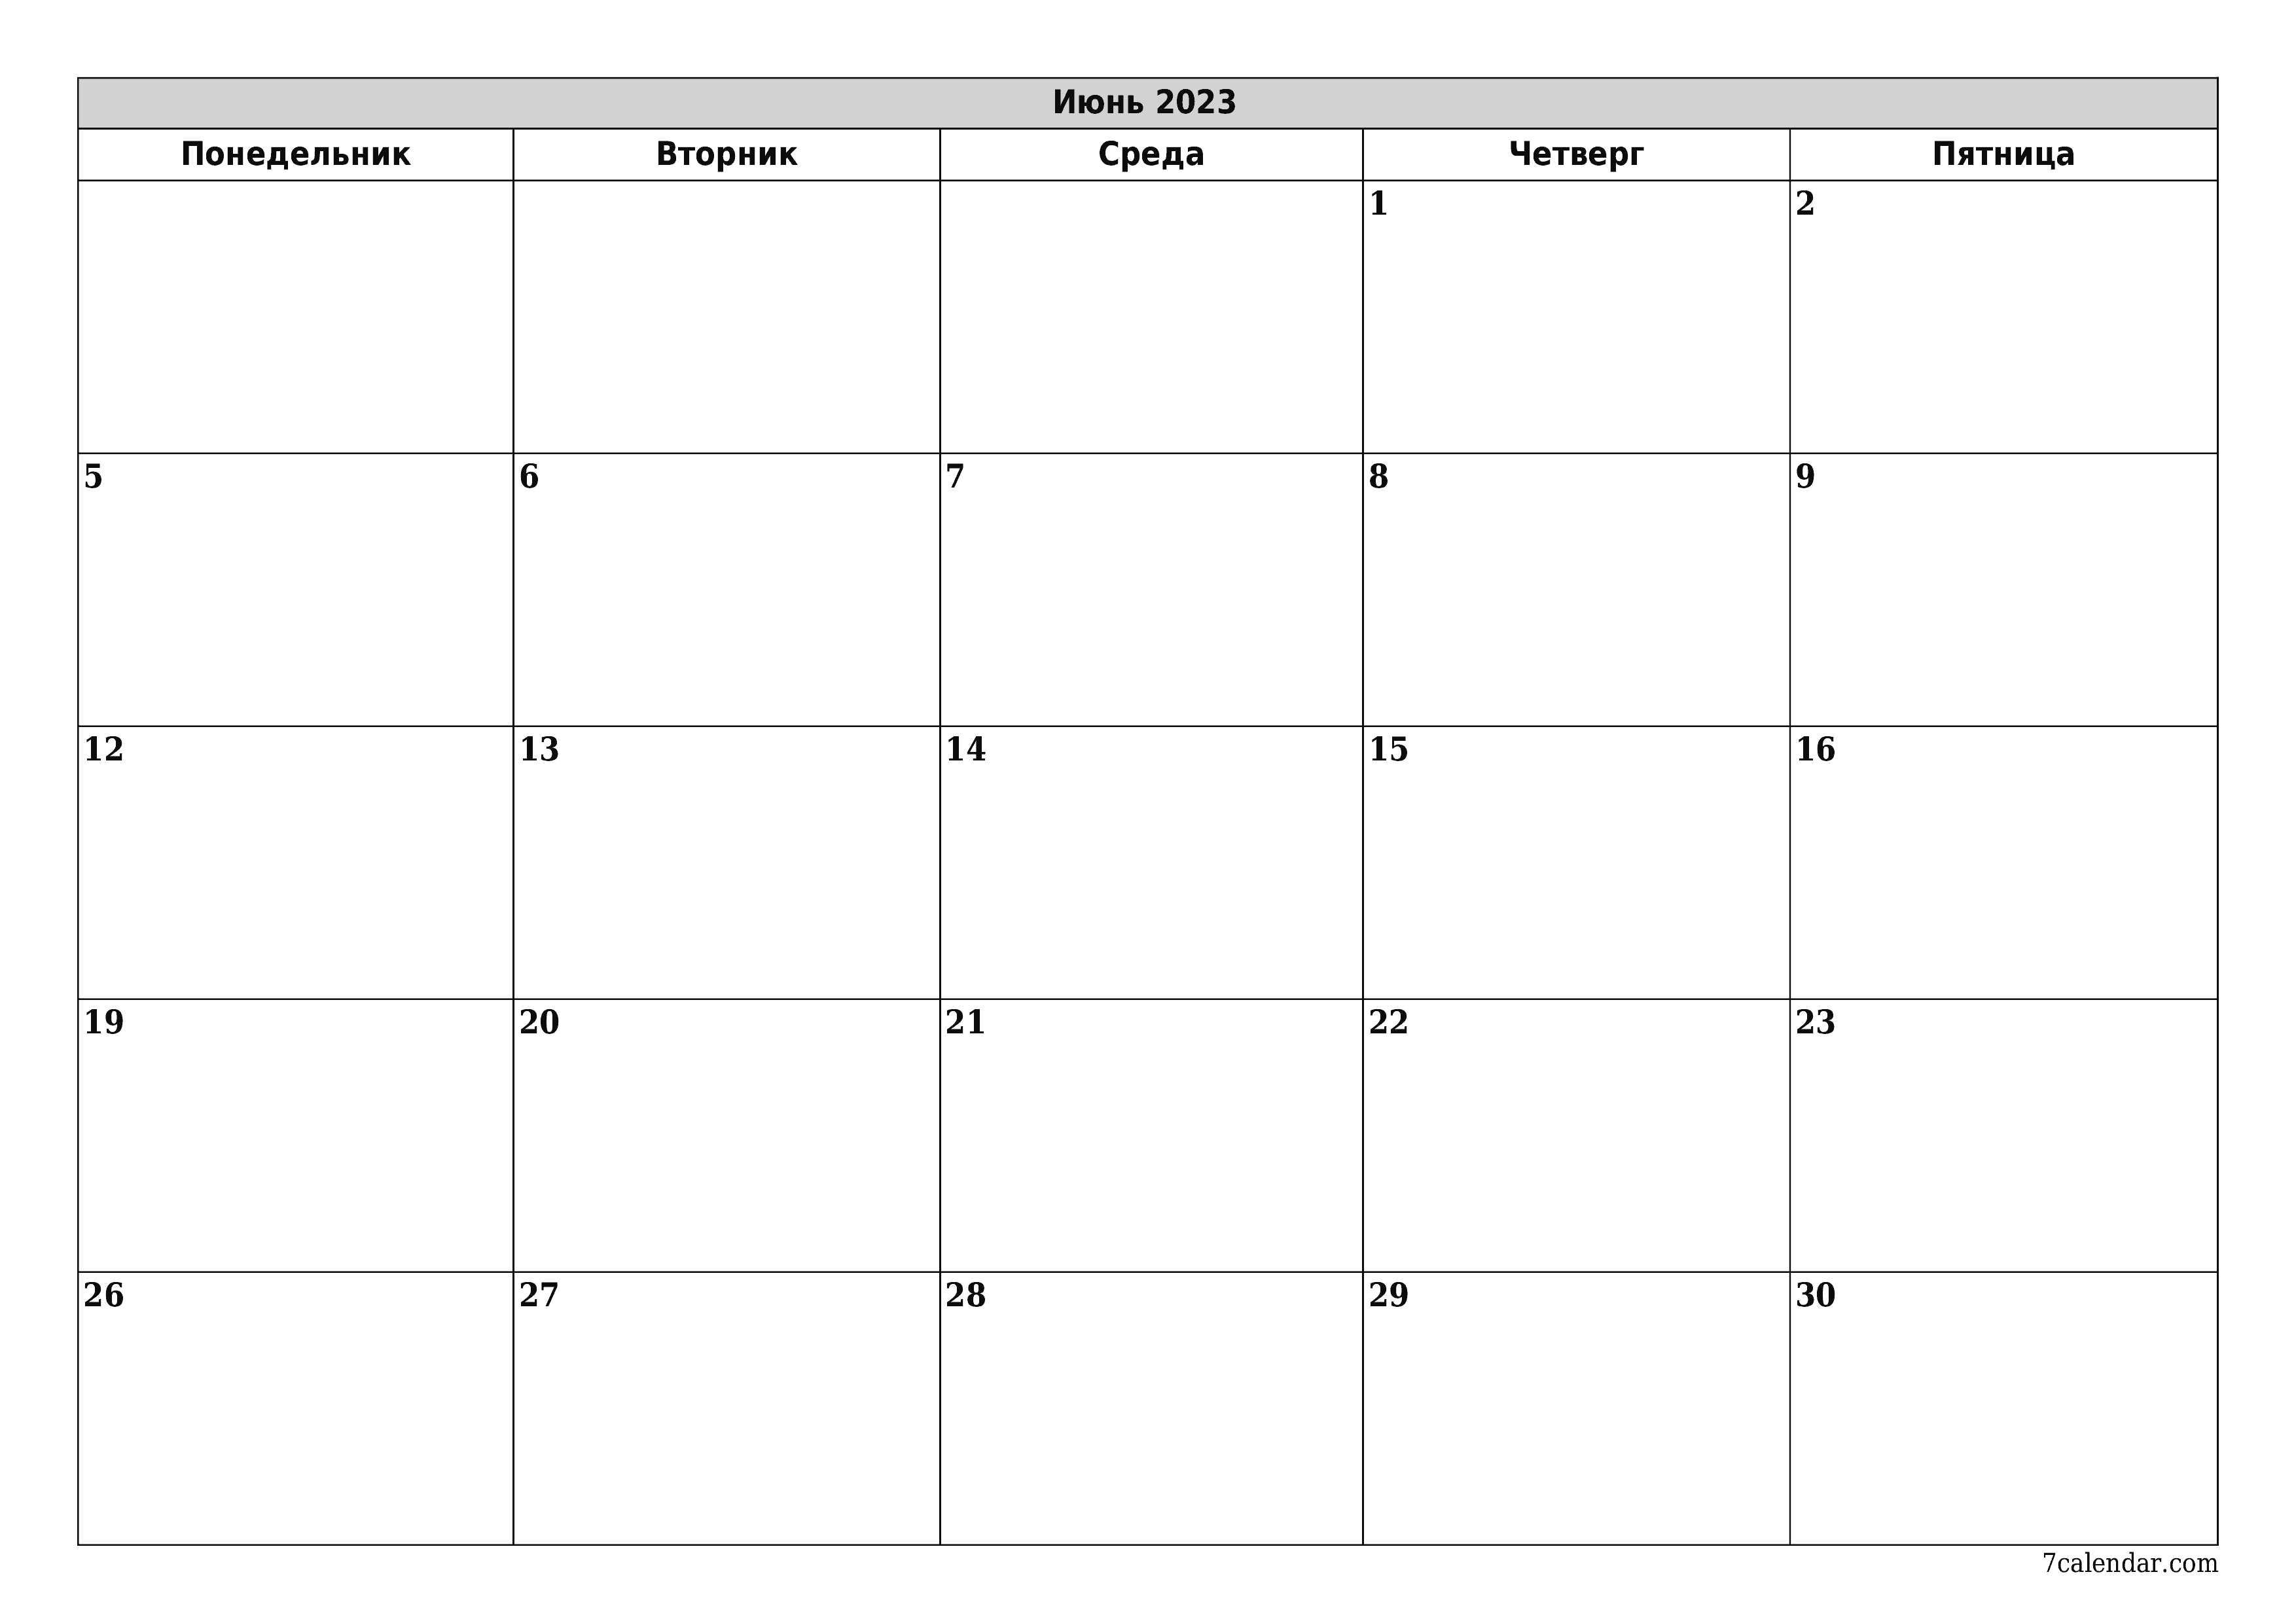 Календари и планеры для печати Июнь 2023 A4, A3 в PDF и PNG - 7calendar